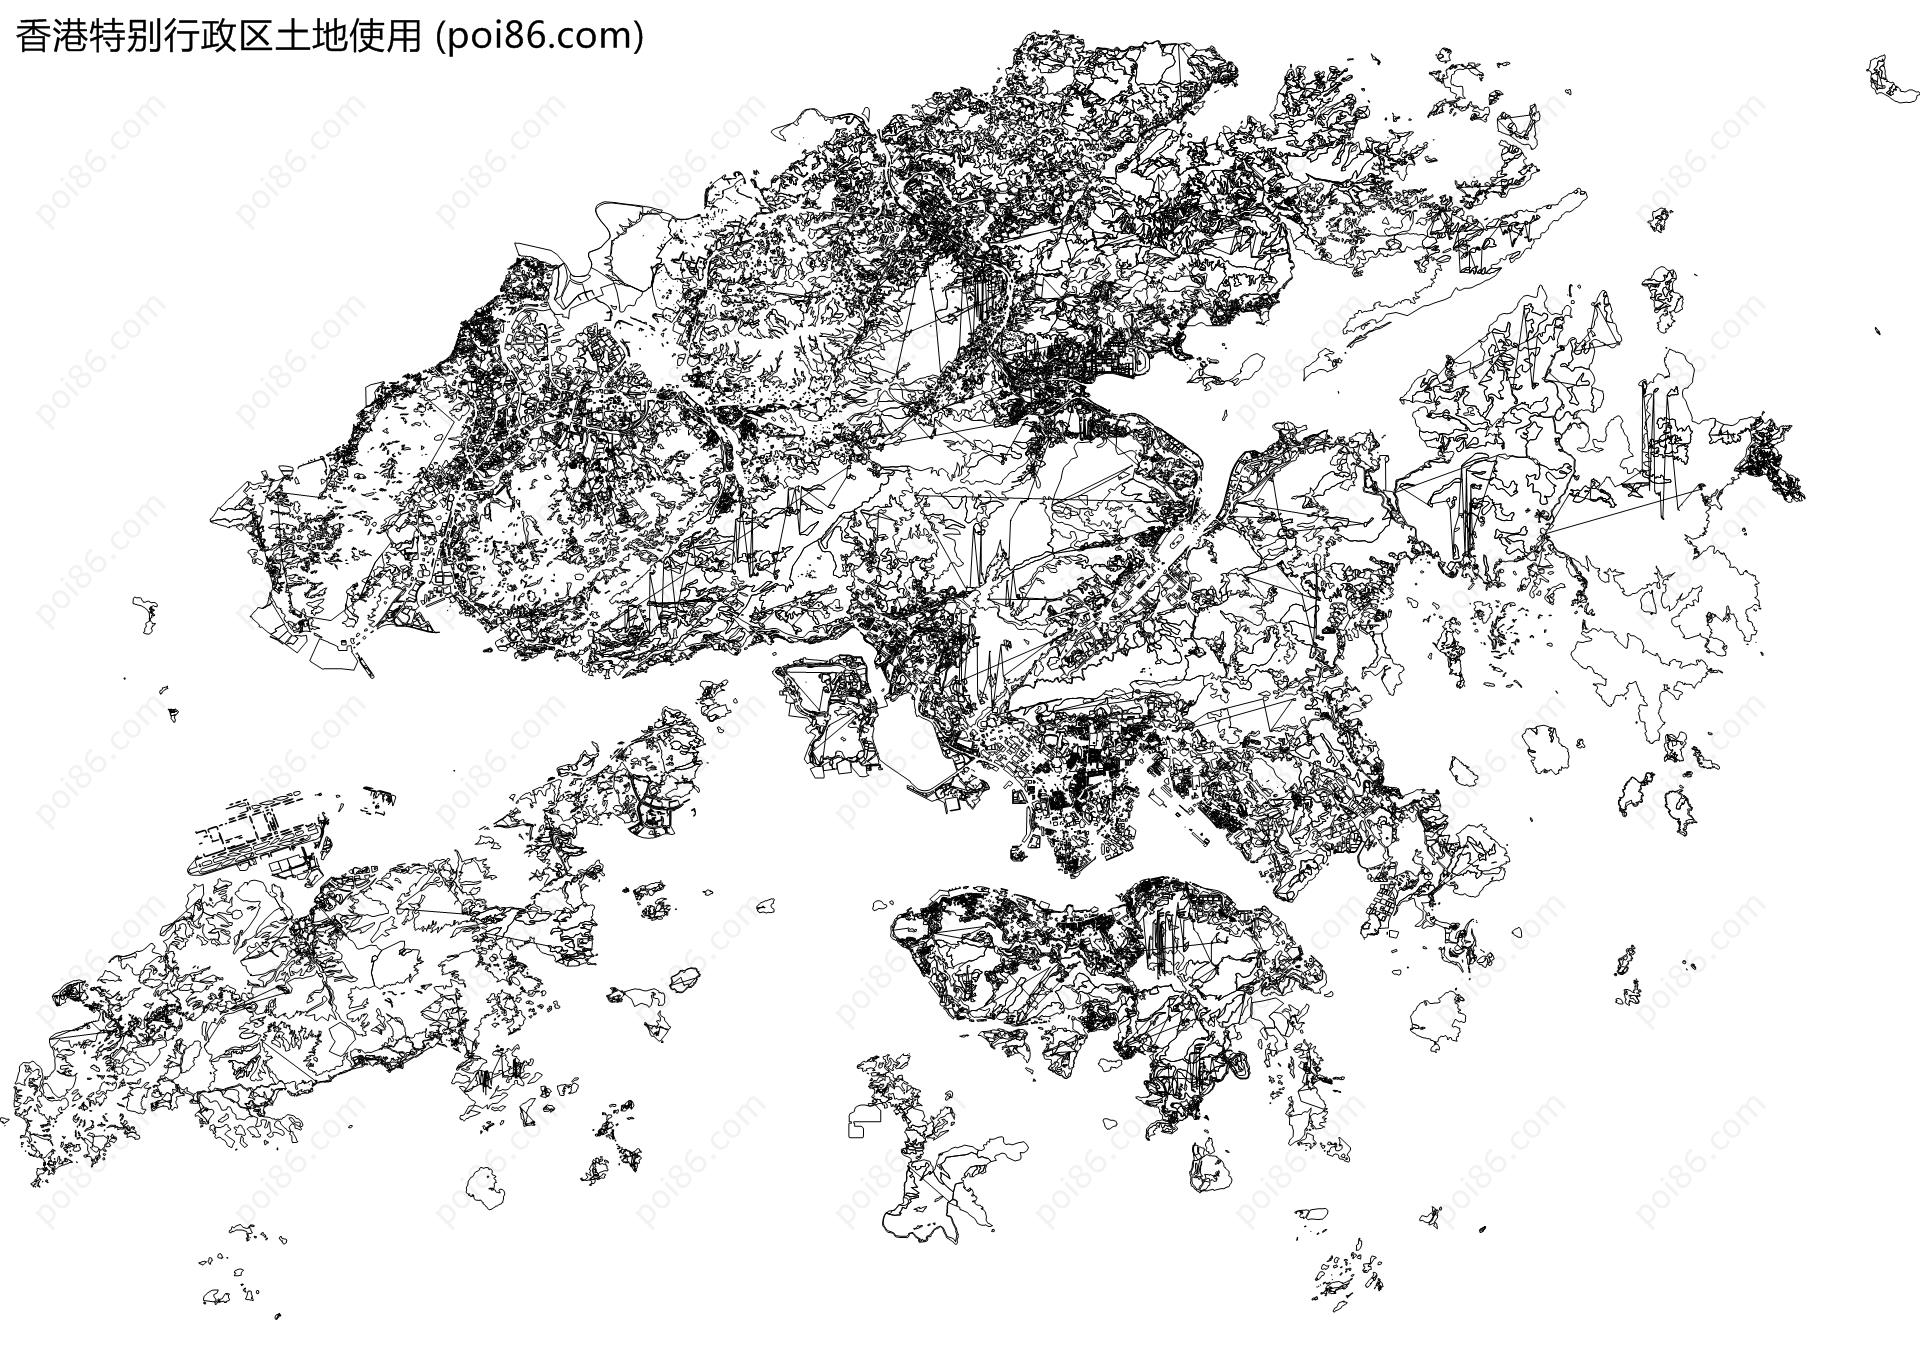 香港特别行政区土地使用地图